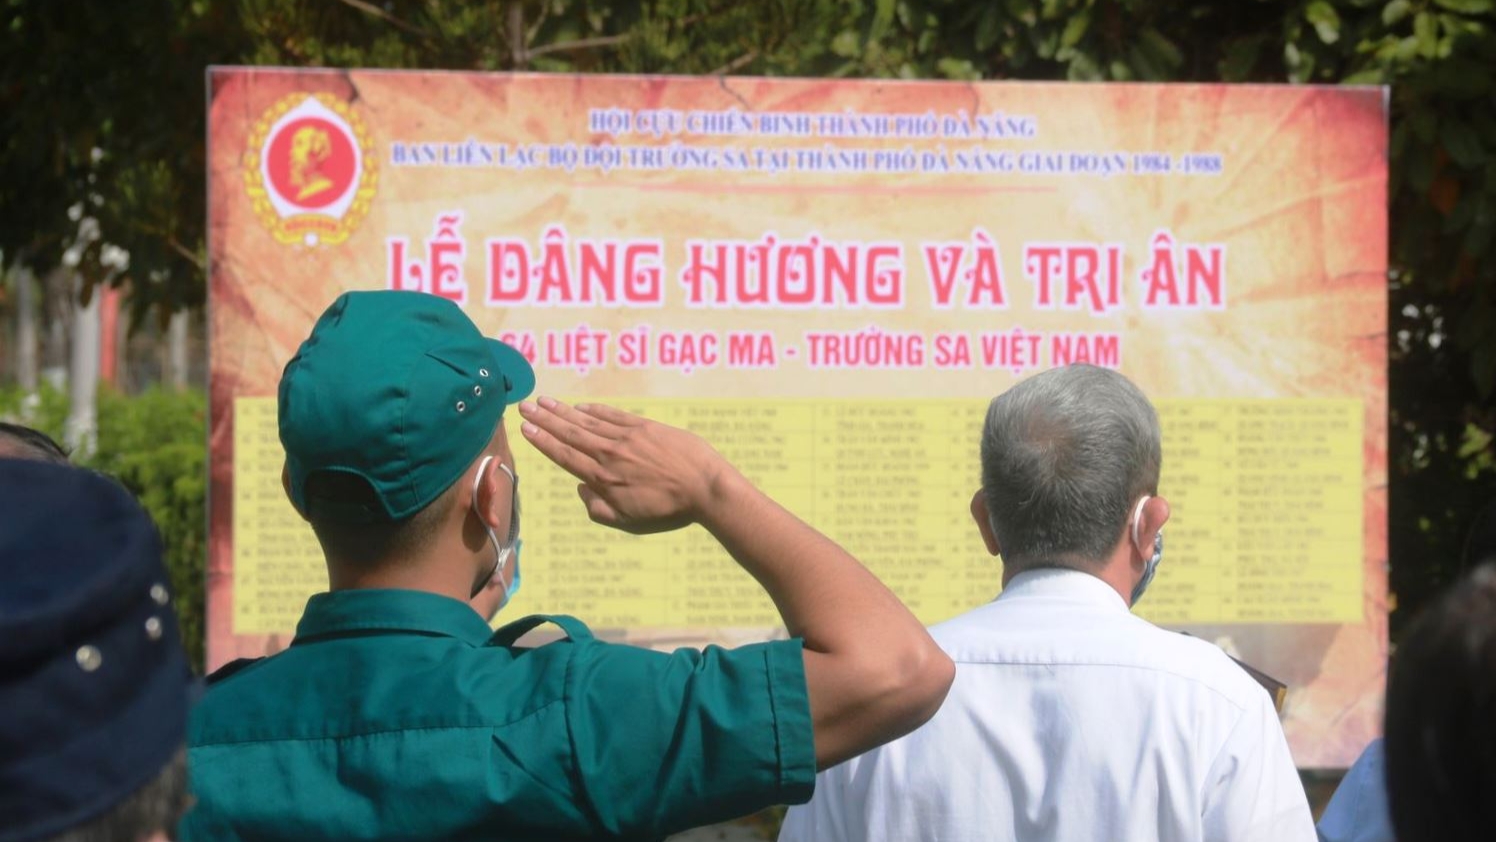 缅怀越南人民海军64名士兵在长沙群岛鬼鹿角礁为捍卫祖国海洋岛屿主权而英勇牺牲34周年